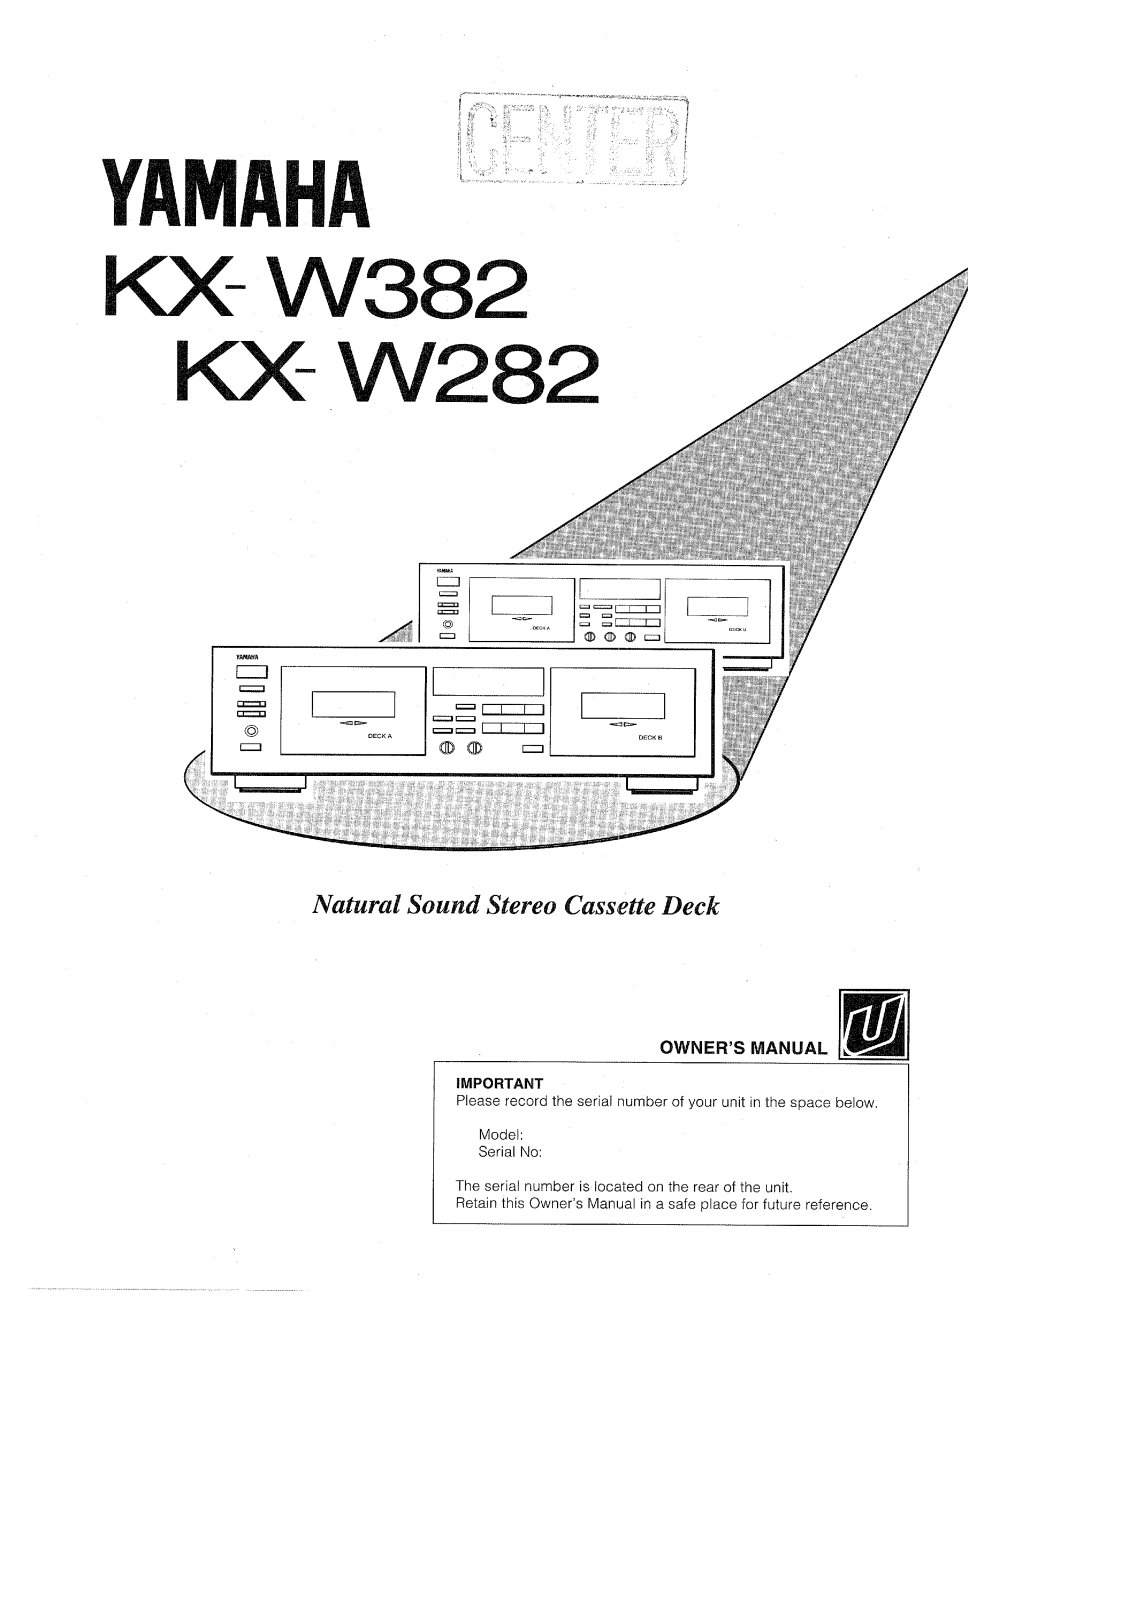 Yamaha KX-W282, KX-W382 Owner Manual